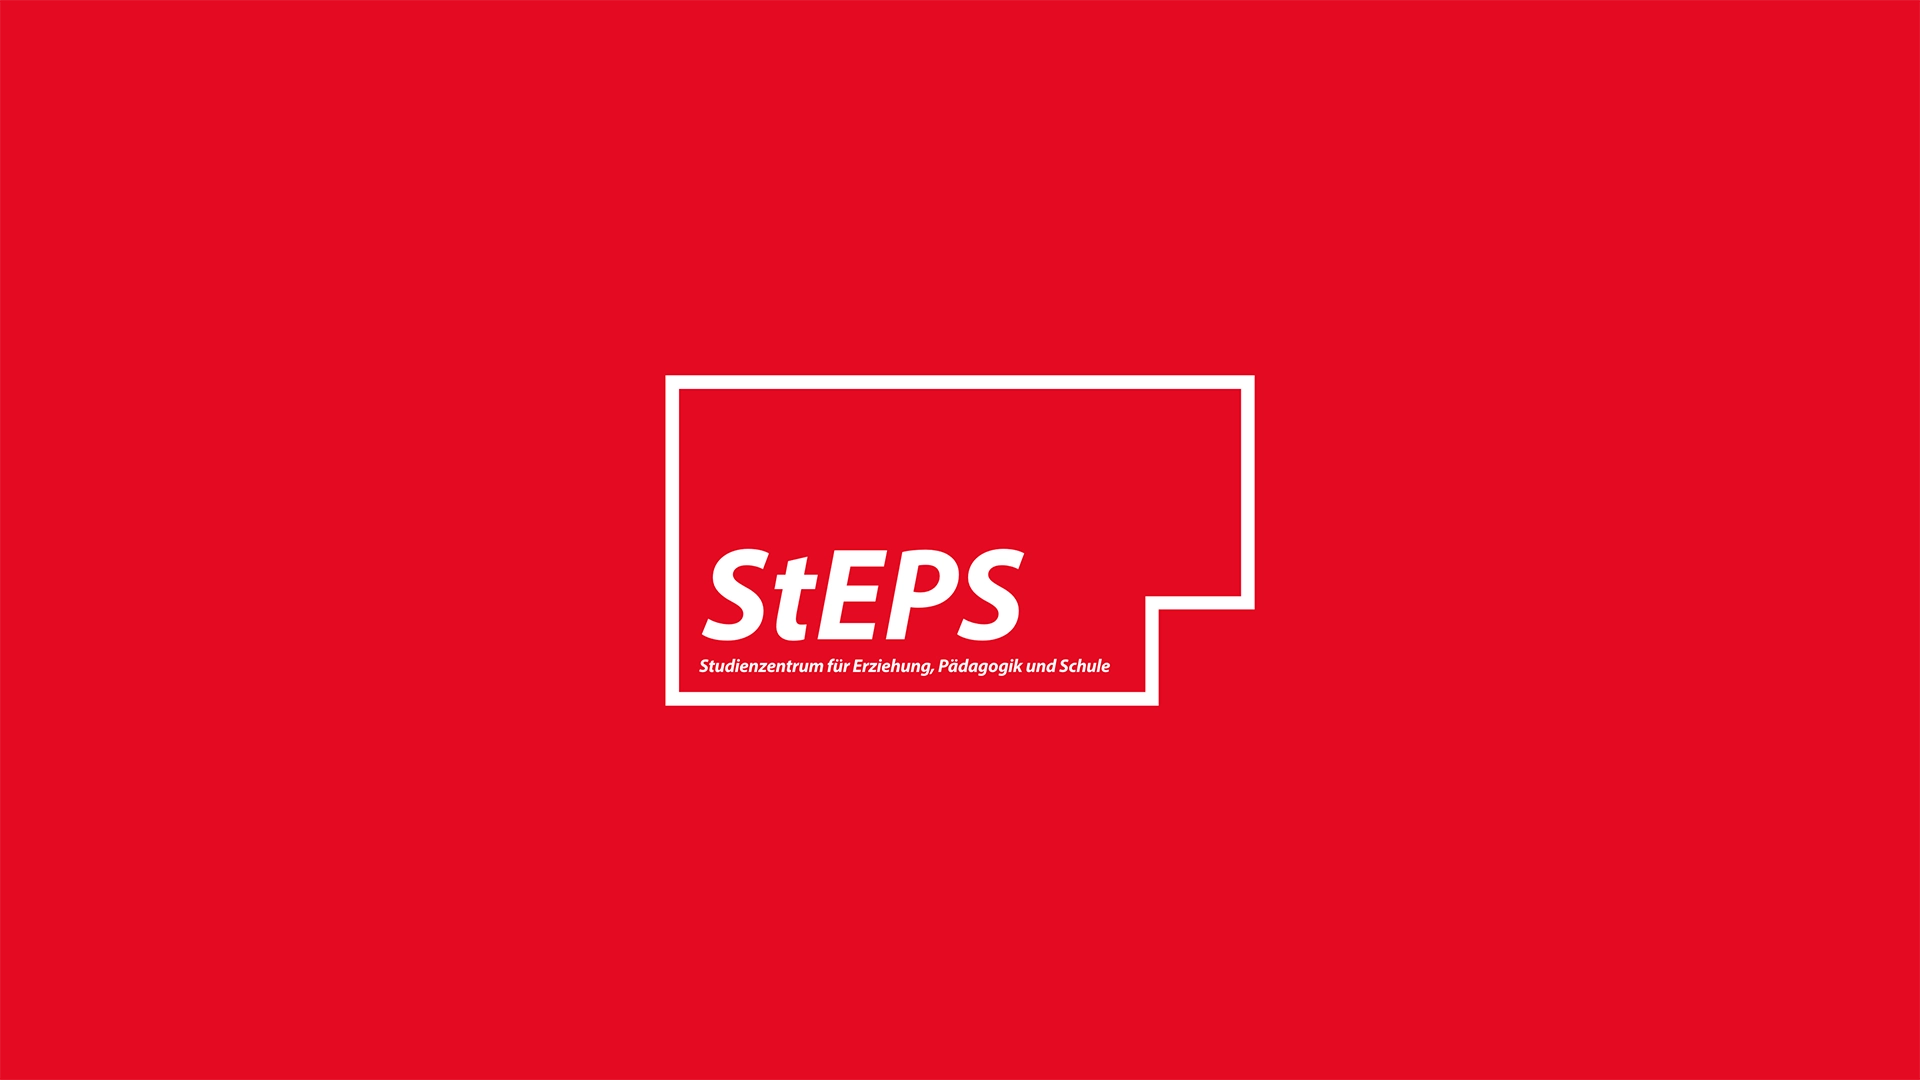 Ein Bild zeigt das große rote Logo von StEPS, der berufsbegleitende Weiterbildung der Berliner Senatsverwaltung für Bildung, Jugend